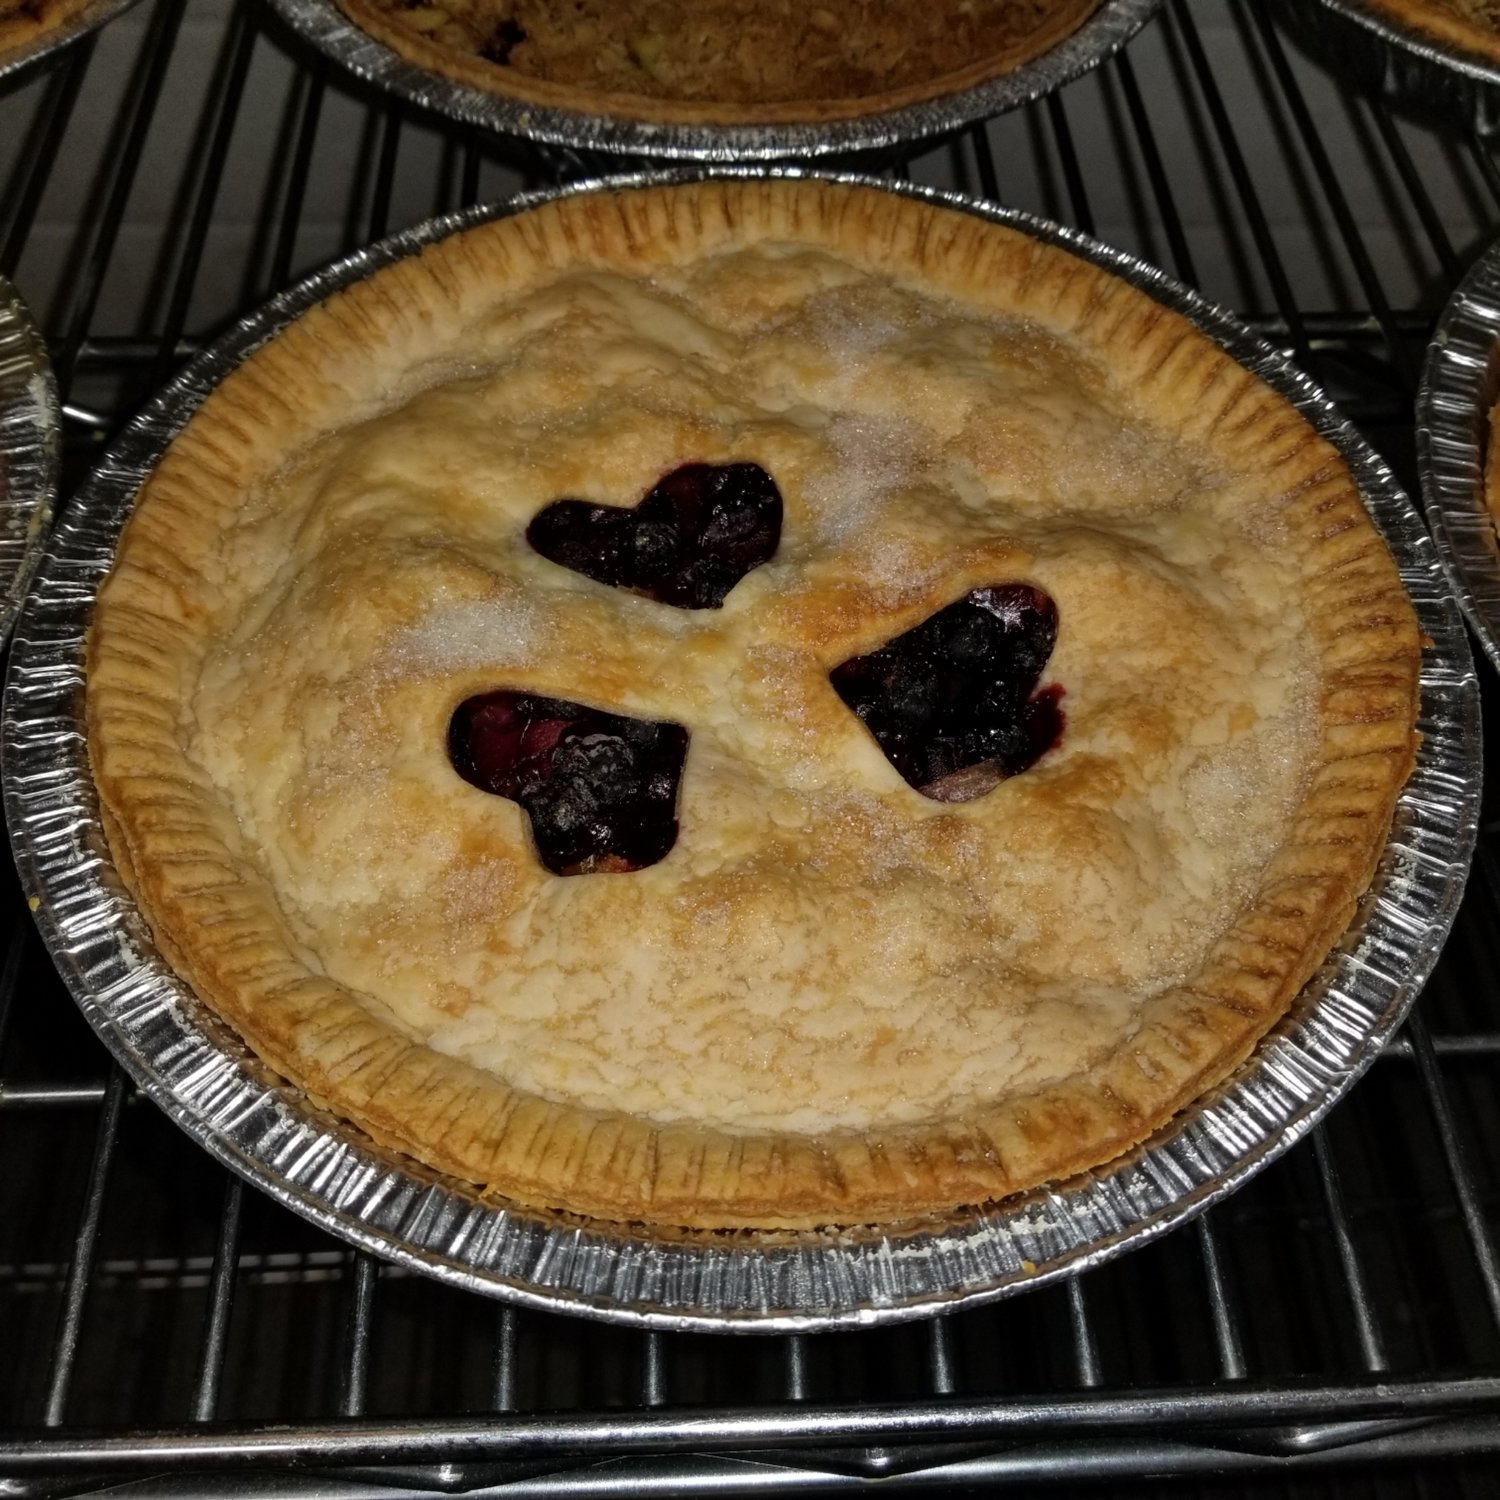 Saskatoon-Rhubarb Pie